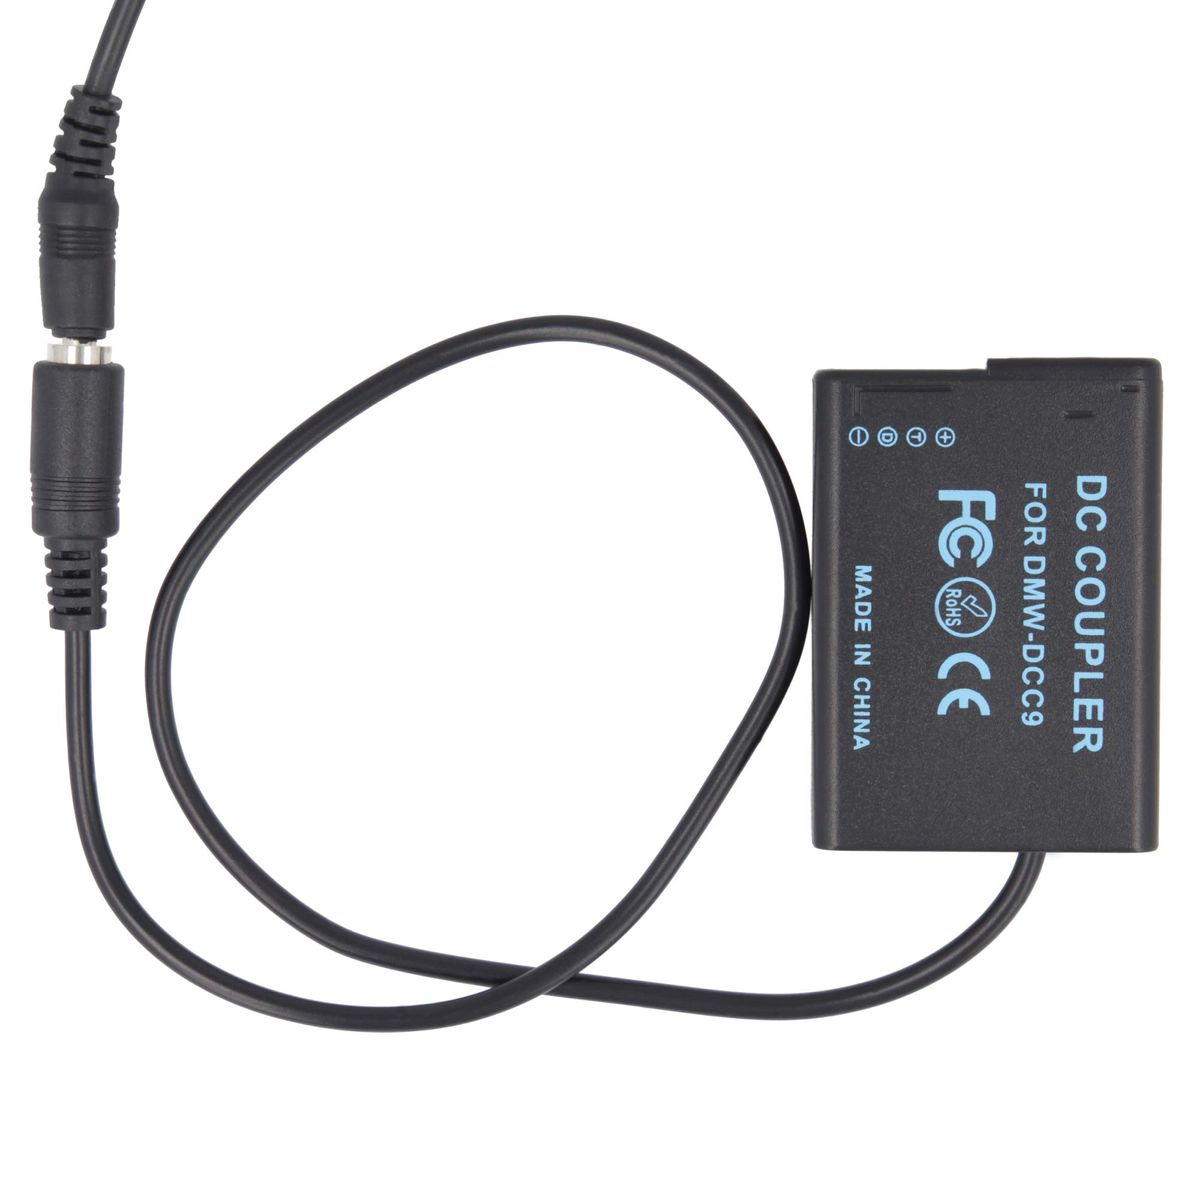 AKKU-KING USB-C Adapter DCC9 Panasonic keine kompatibel Panasonic, mit Angabe + Ladegerät Kuppler